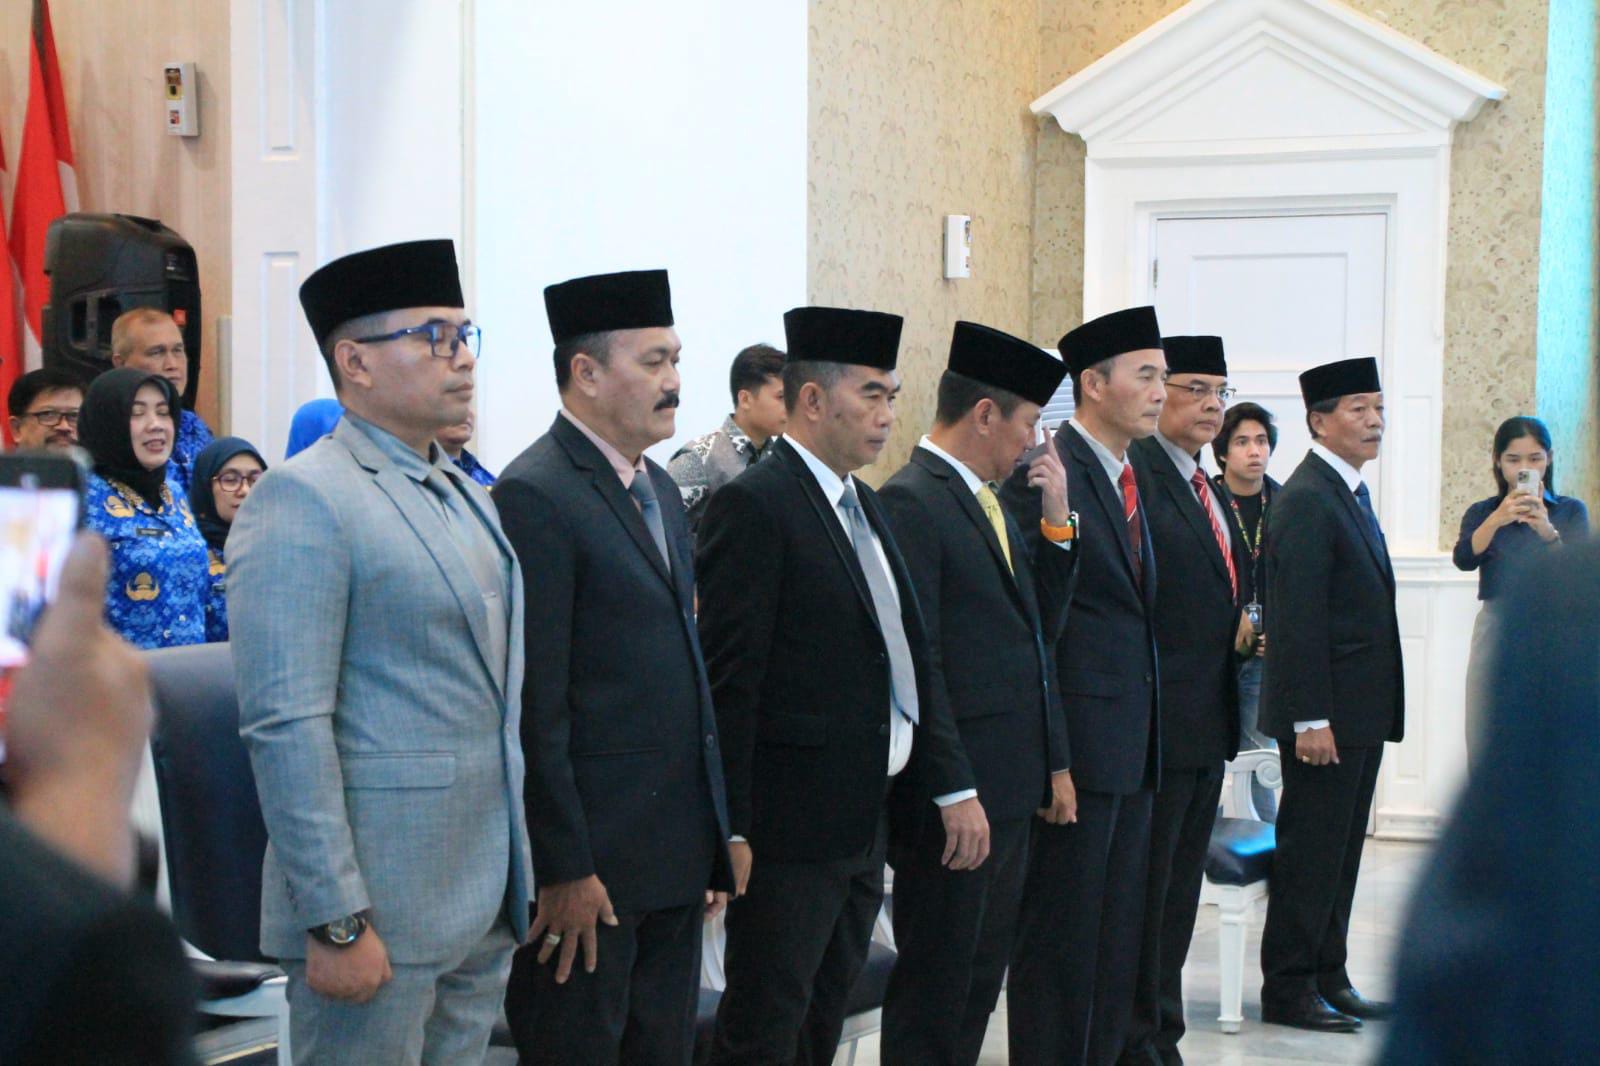 Para pejabat di lingkungan Pemkot Bogor yang dirotasi oleh Wali Kota Bogor, Bima Arya di Balai Kota Bogor, Jumat (17/11). (Yudha Prananda / Jabar Ekspres)